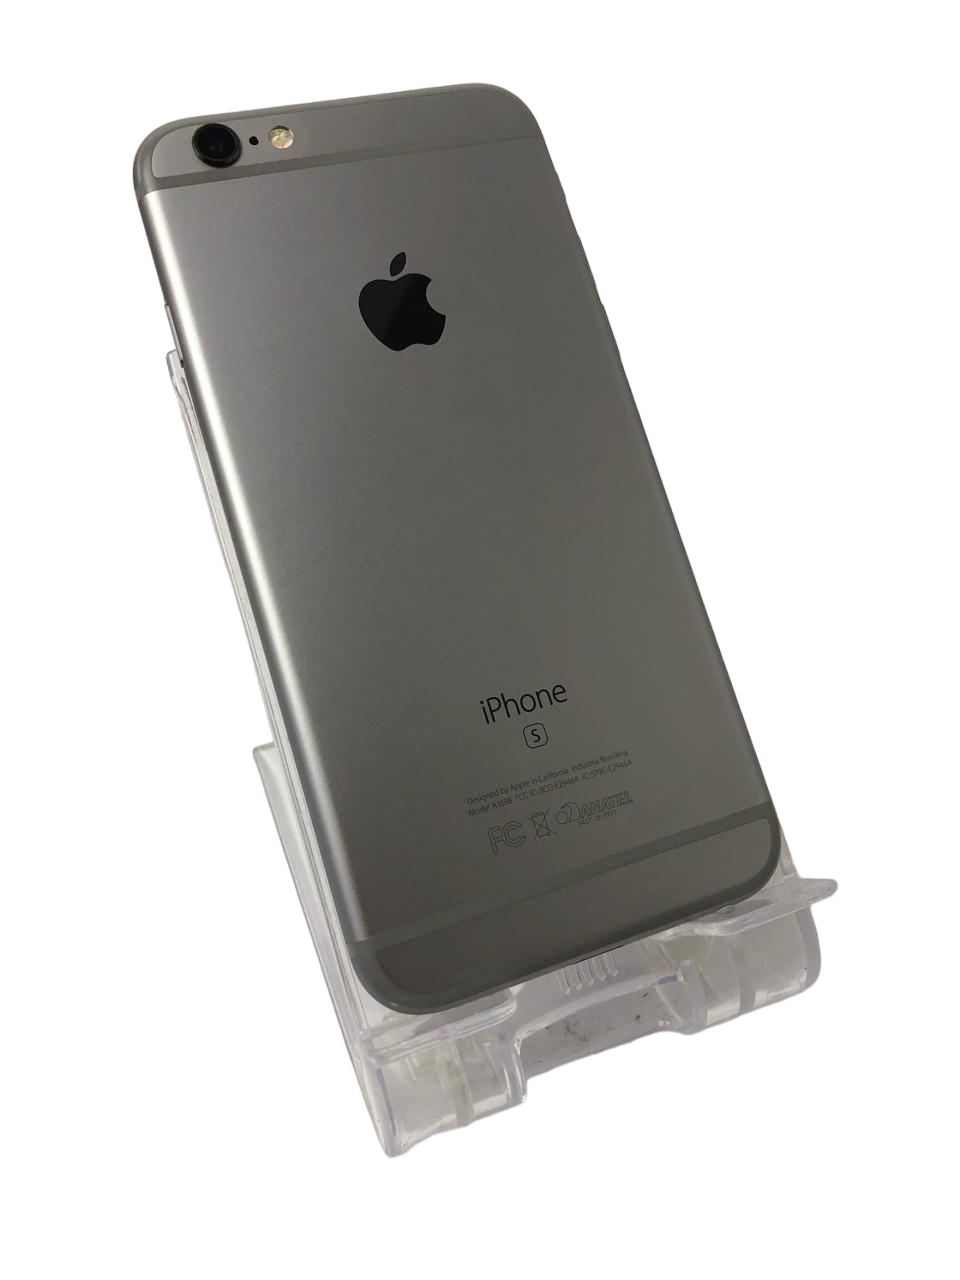 iPhone 6S, MKQJ2BR/A, tela 4.7